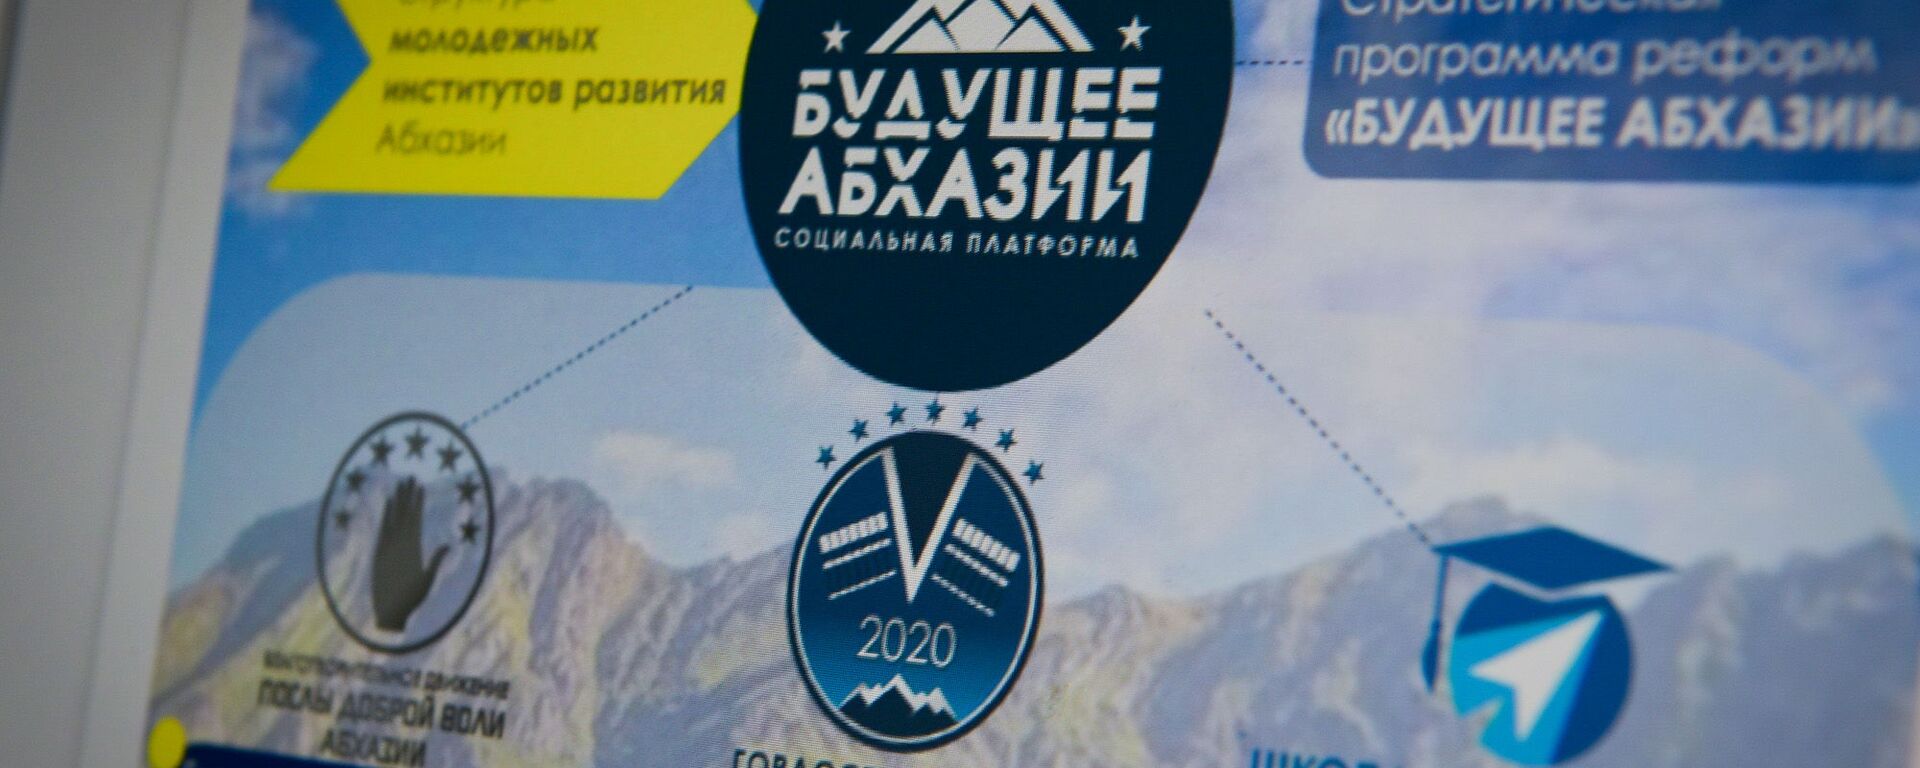 Программа реформ Будущее Абхазии была разработана финалистами конкурса Гордость Абхазии - Sputnik Аҧсны, 1920, 14.06.2022